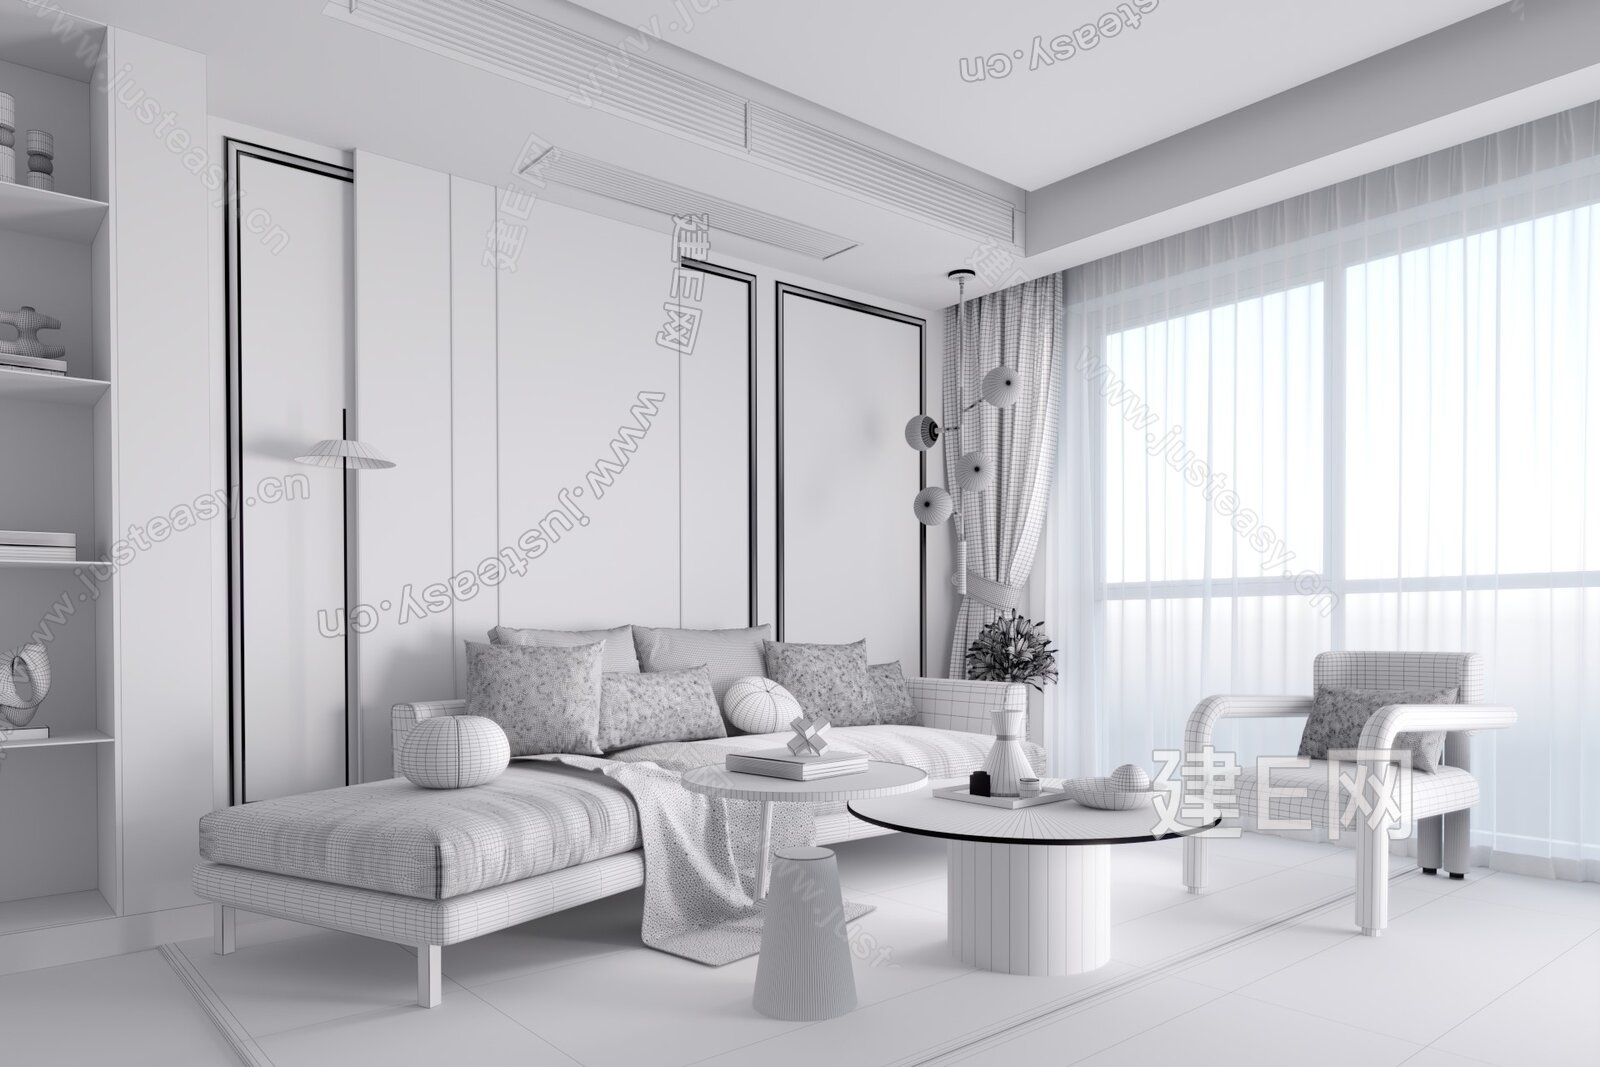 千舍设计 现代客厅3d模型